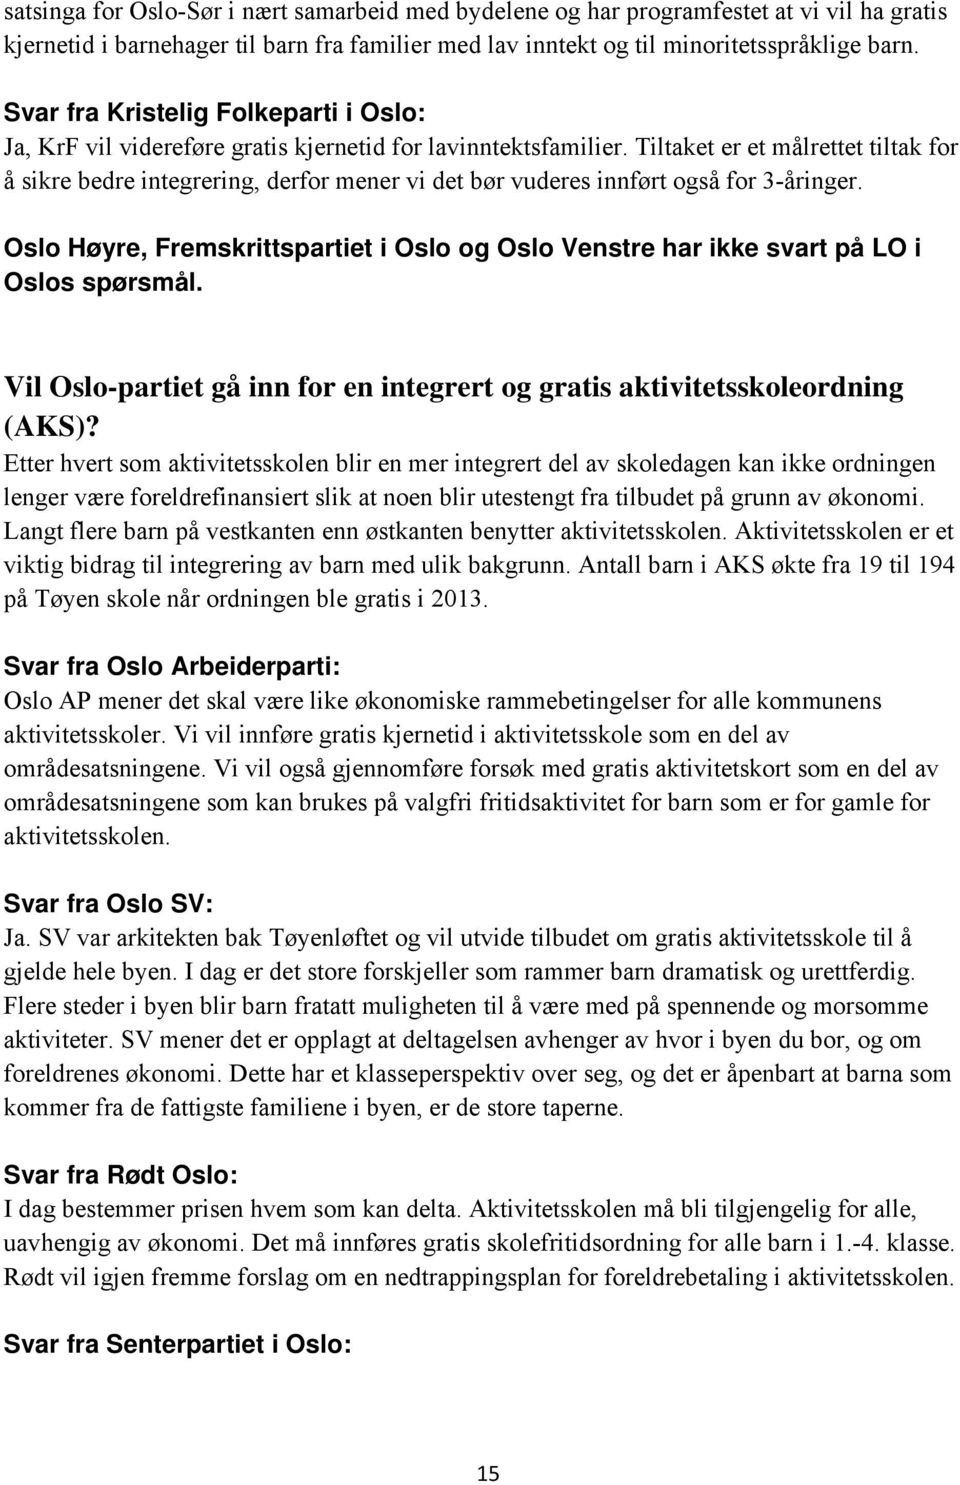 Vil Oslo-partiet gå inn for en integrert og gratis aktivitetsskoleordning (AKS)?